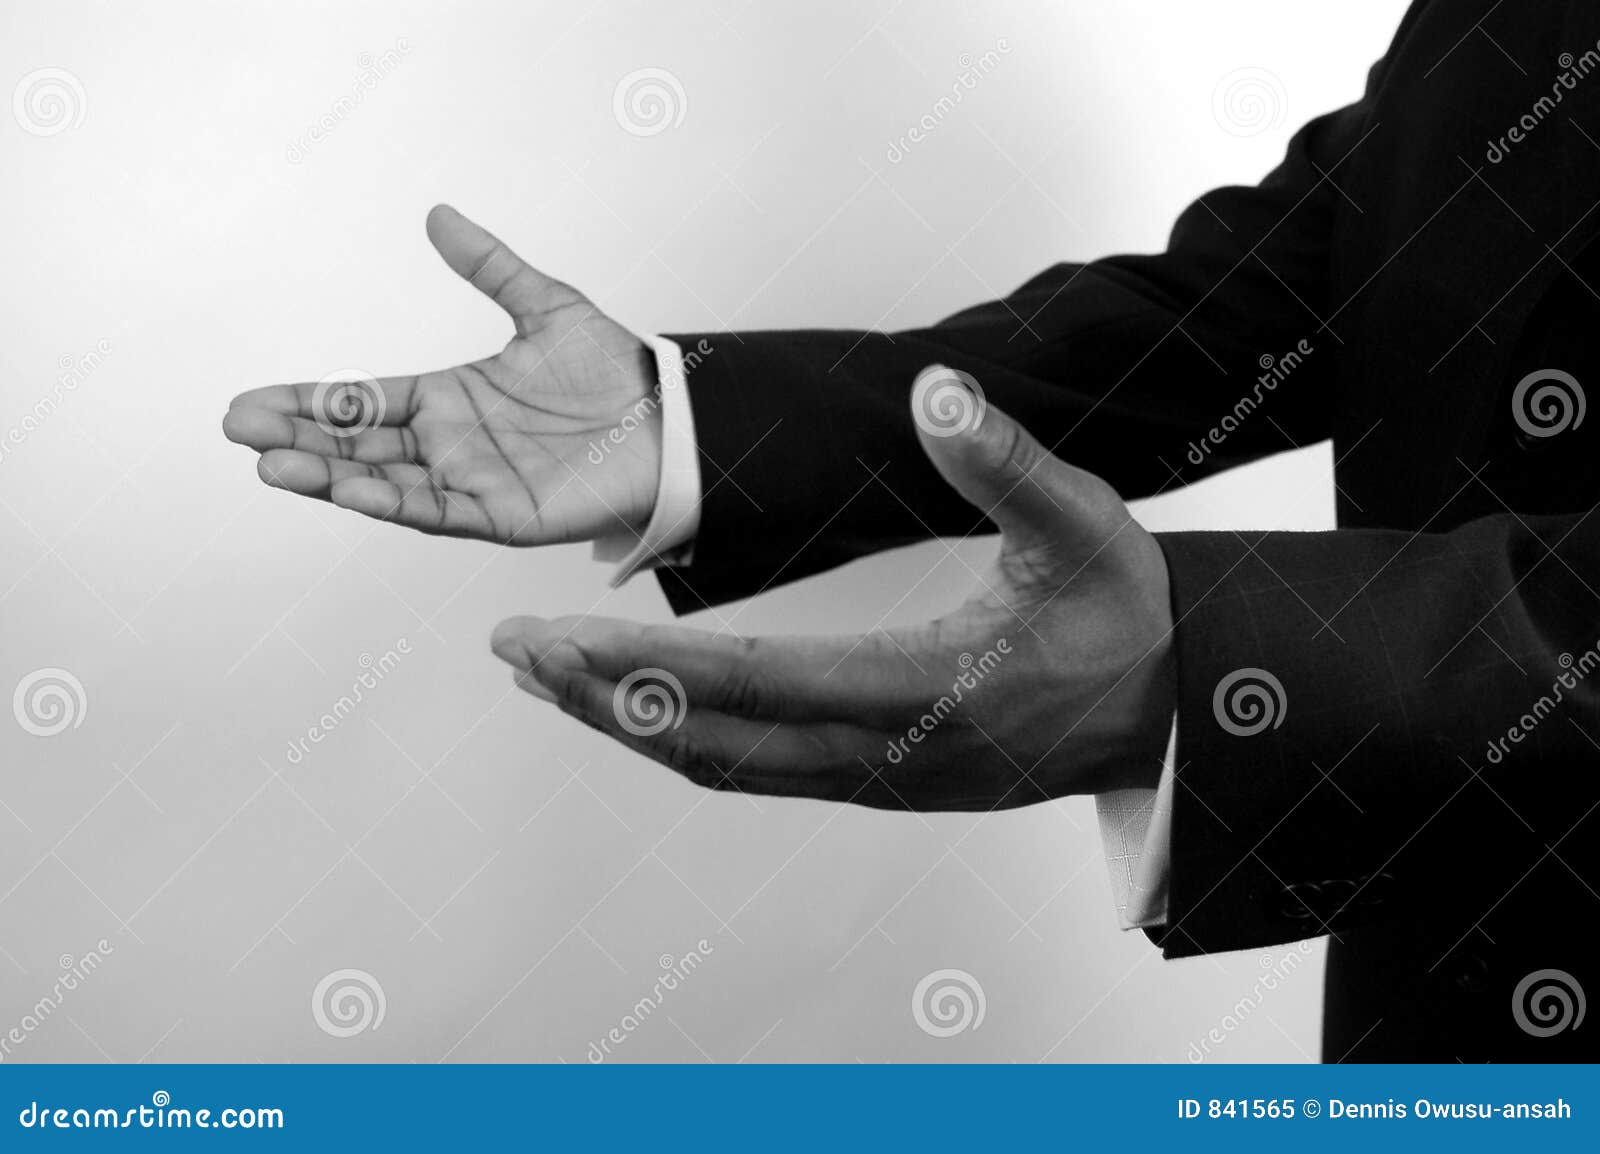 Commercio-Io qui (due mani) b/w. Ciò è un'immagine di un accoppiamento della mano che offre una mano di guida. La metafora per il commercio raggiunge fuori, cura corporativa ecc? (lascilo per favore sapere dove l'immagine sarà usata lasciando un messaggio nella sezione di osservazioni/vede il portafoglio)